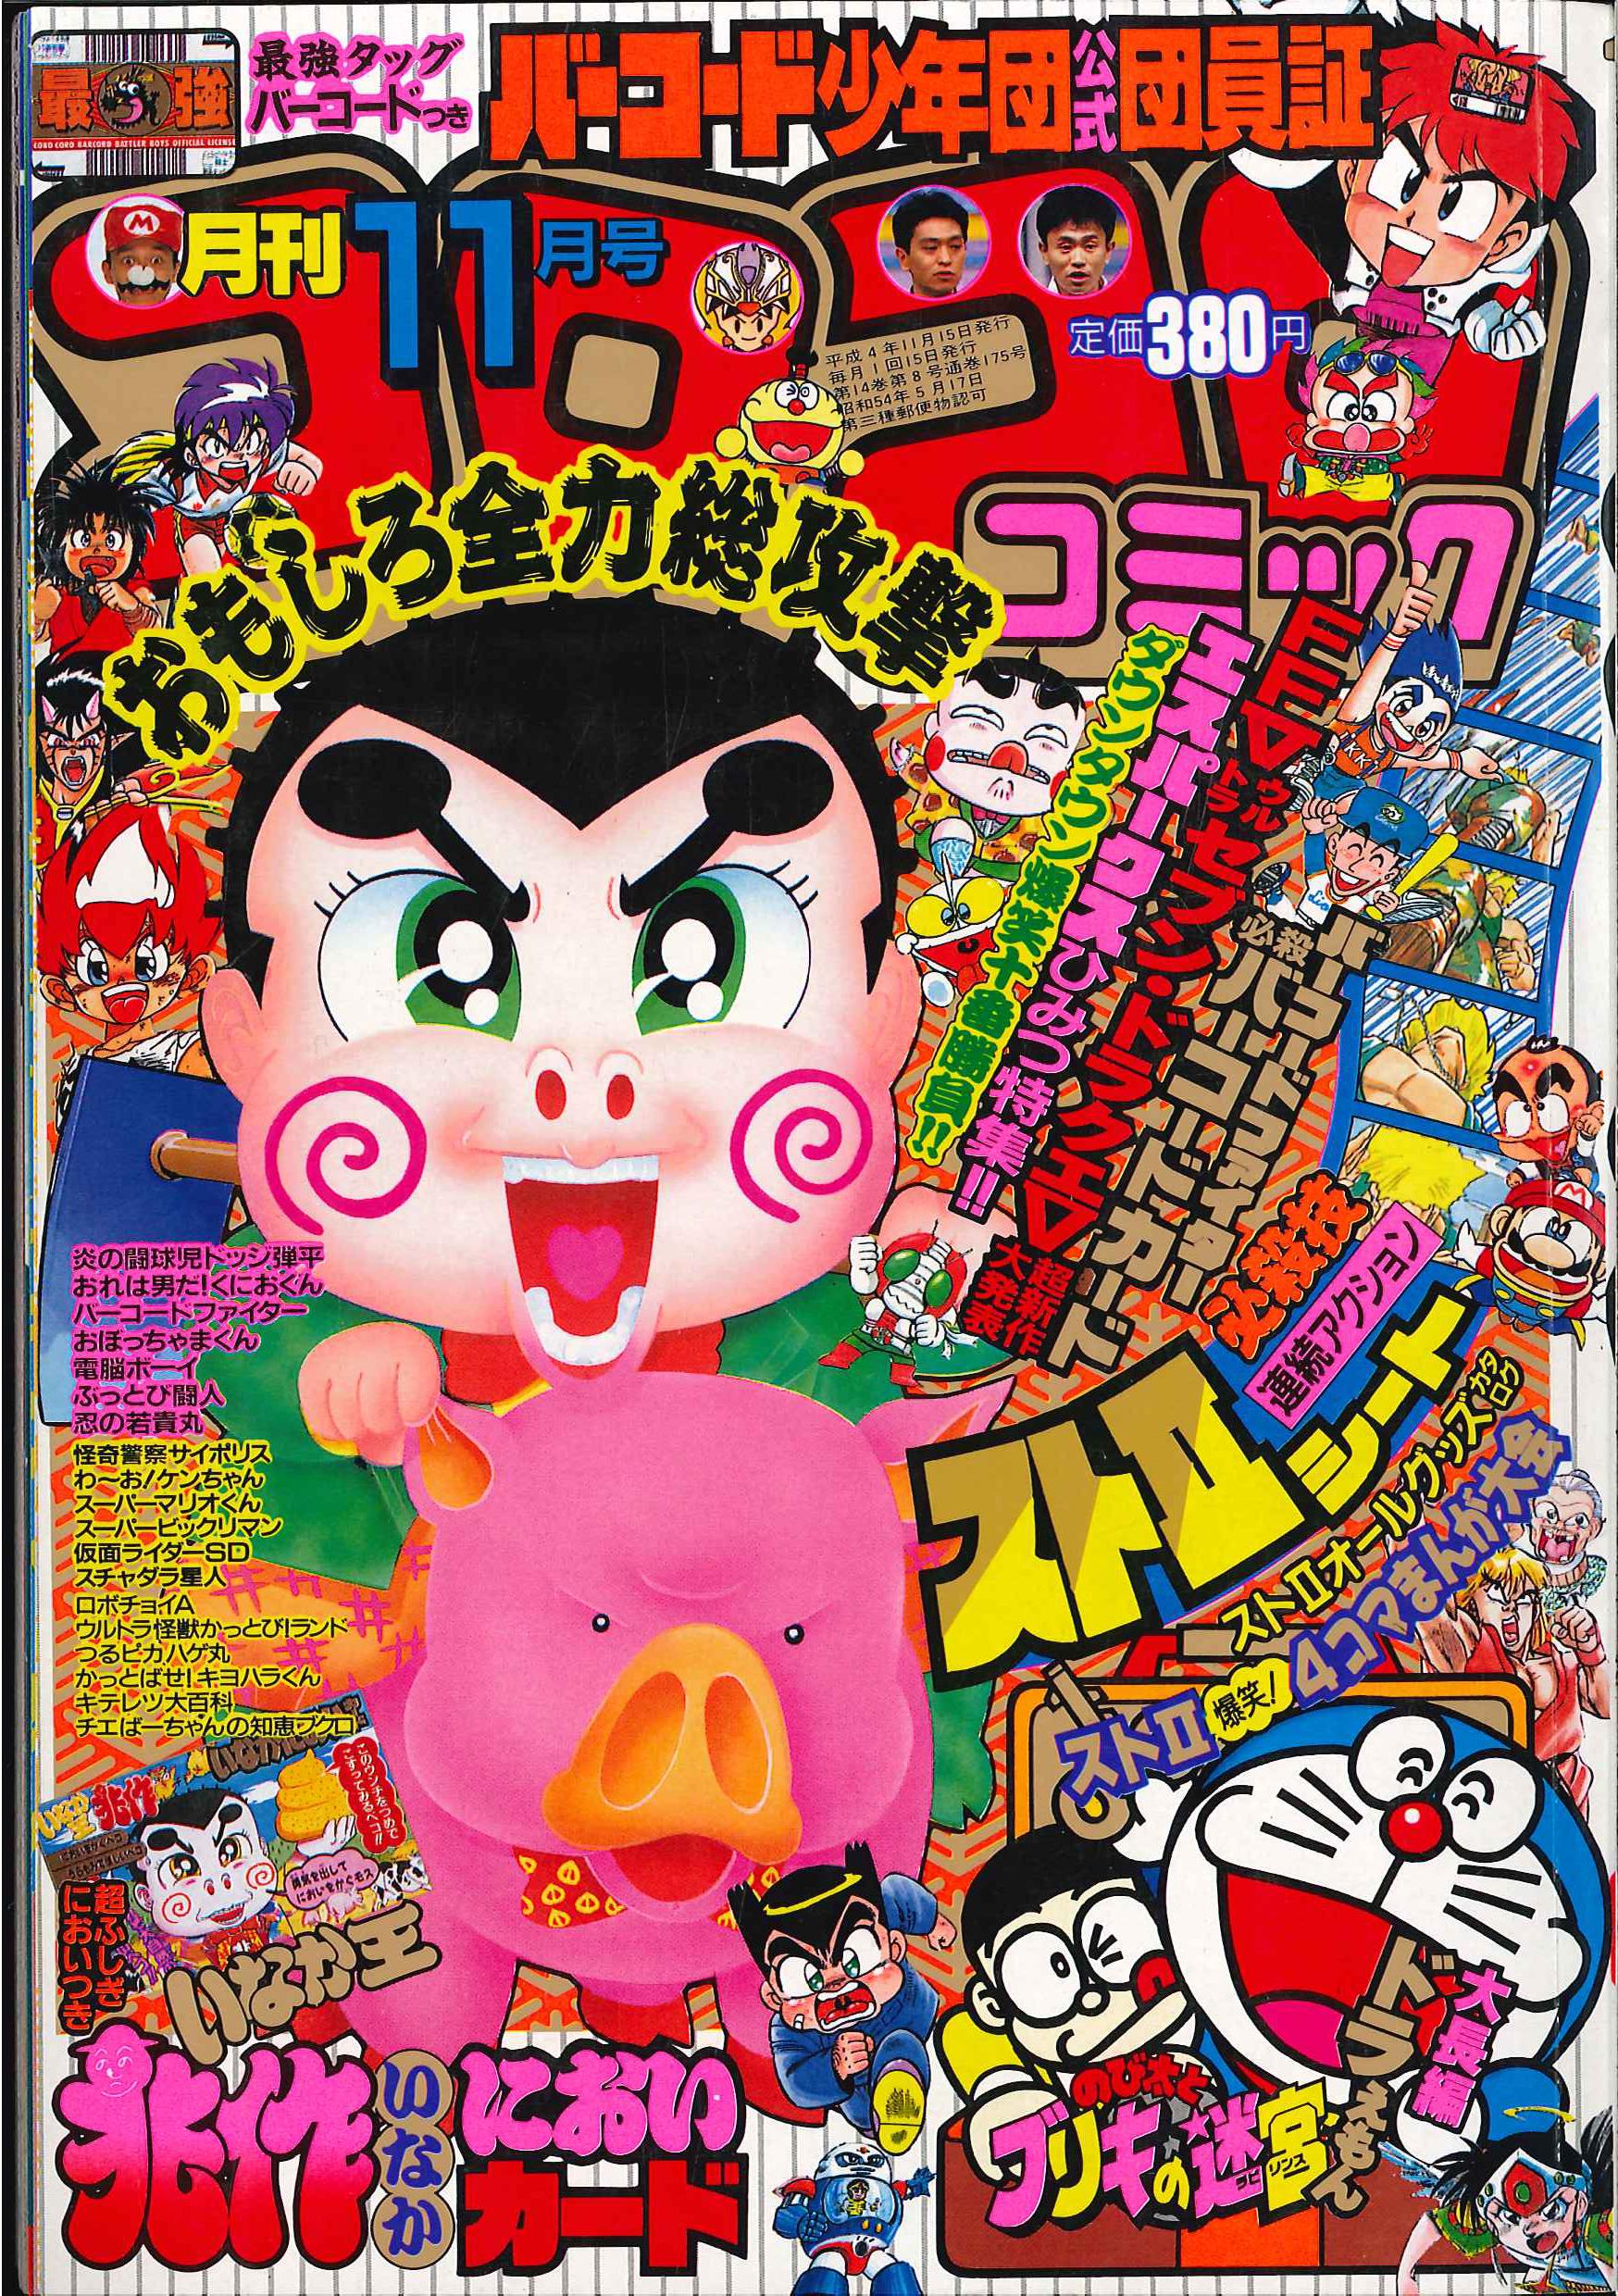 小学館 1992年(平成4年)の漫画雑誌 『コロコロコミック 1992年(平成4年 